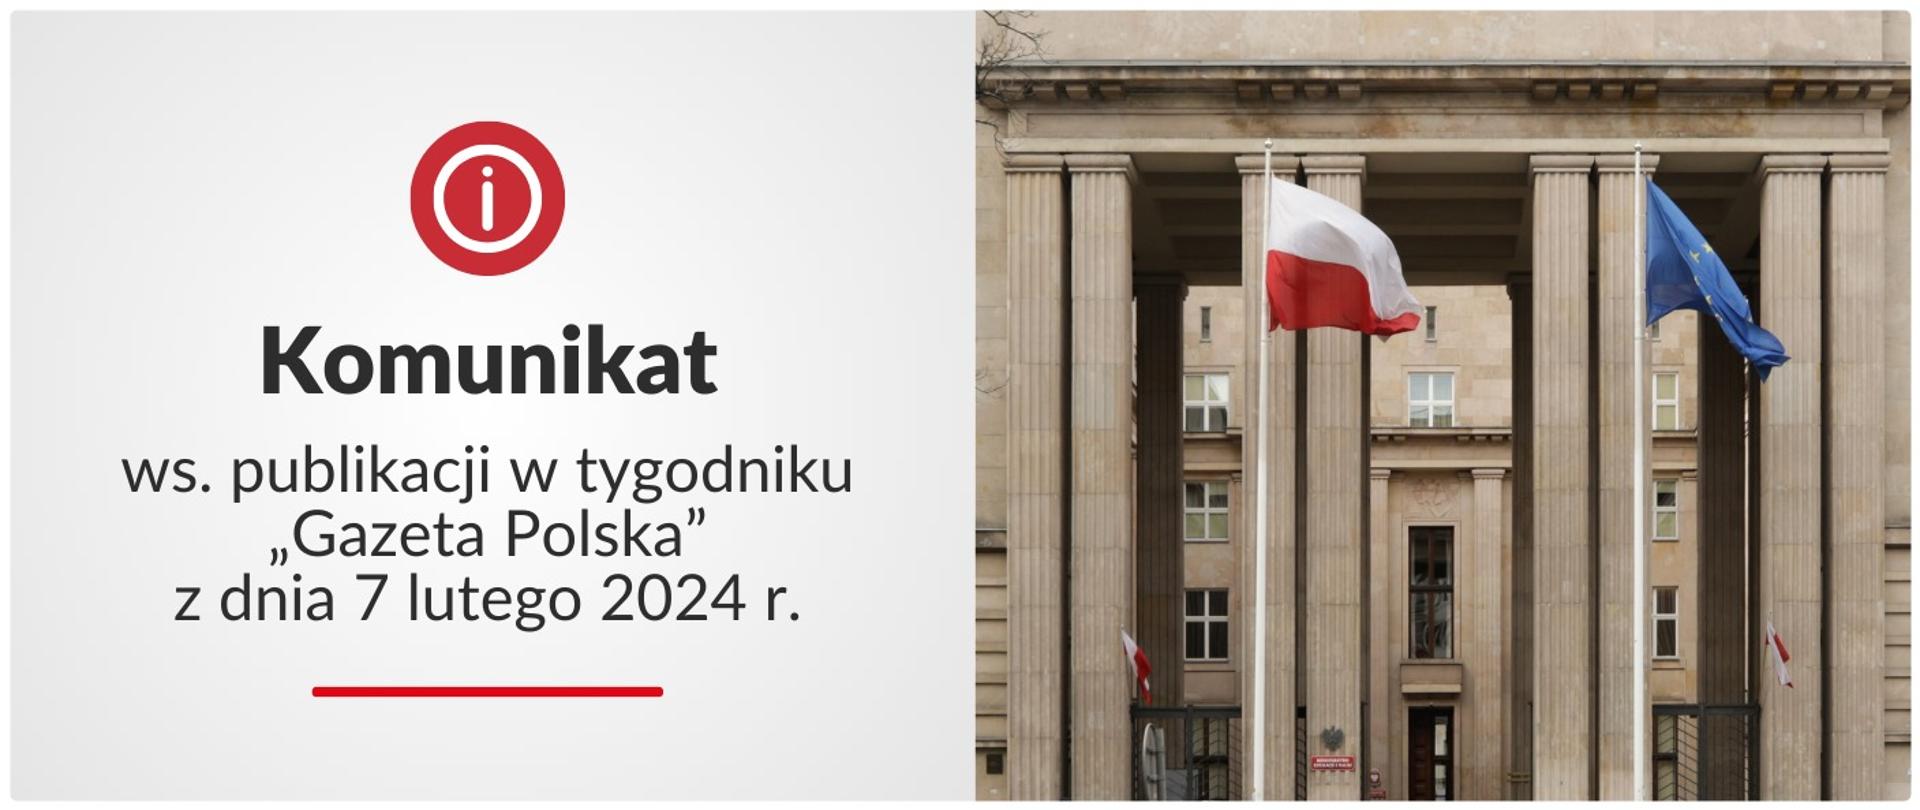 Grafika: po prawej stronie budynek Ministerstwa Edukacji Narodowej. Po lewej stronie tekst: Komunikat ws. publikacji w tygodniku „Gazeta Polska” w dniu 7 lutego 2024 r.